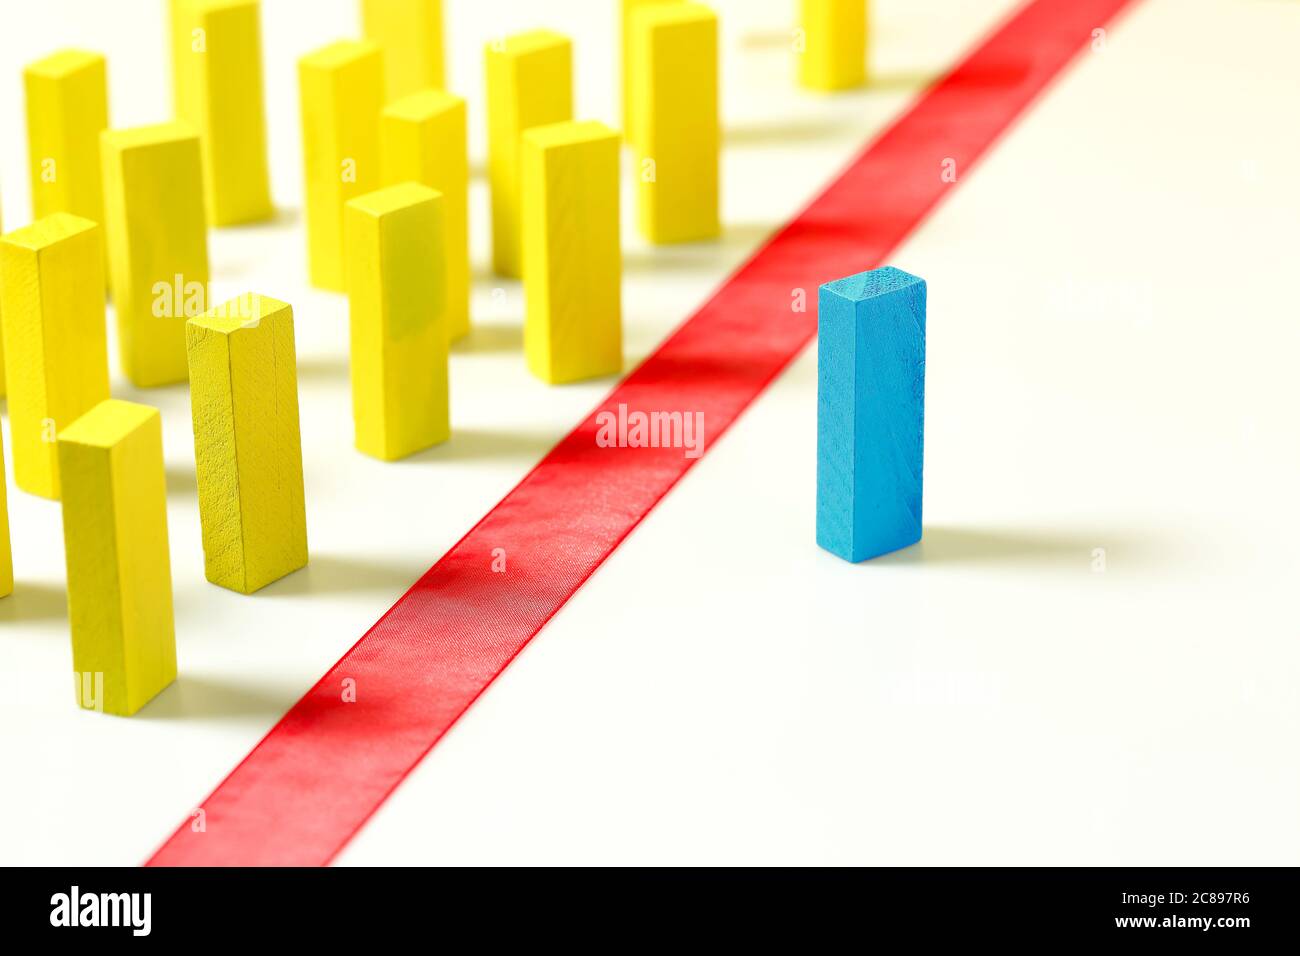 línea roja entre bloques de madera amarillos y azules, concepto de discriminación, diversidad, etc. Foto de stock